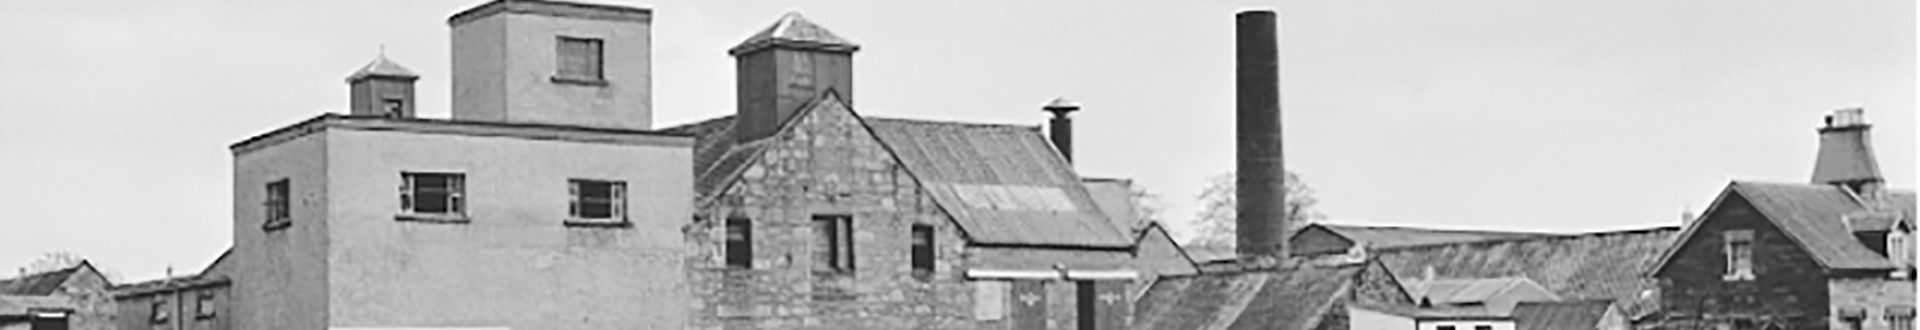 Glen Mhor Distillery